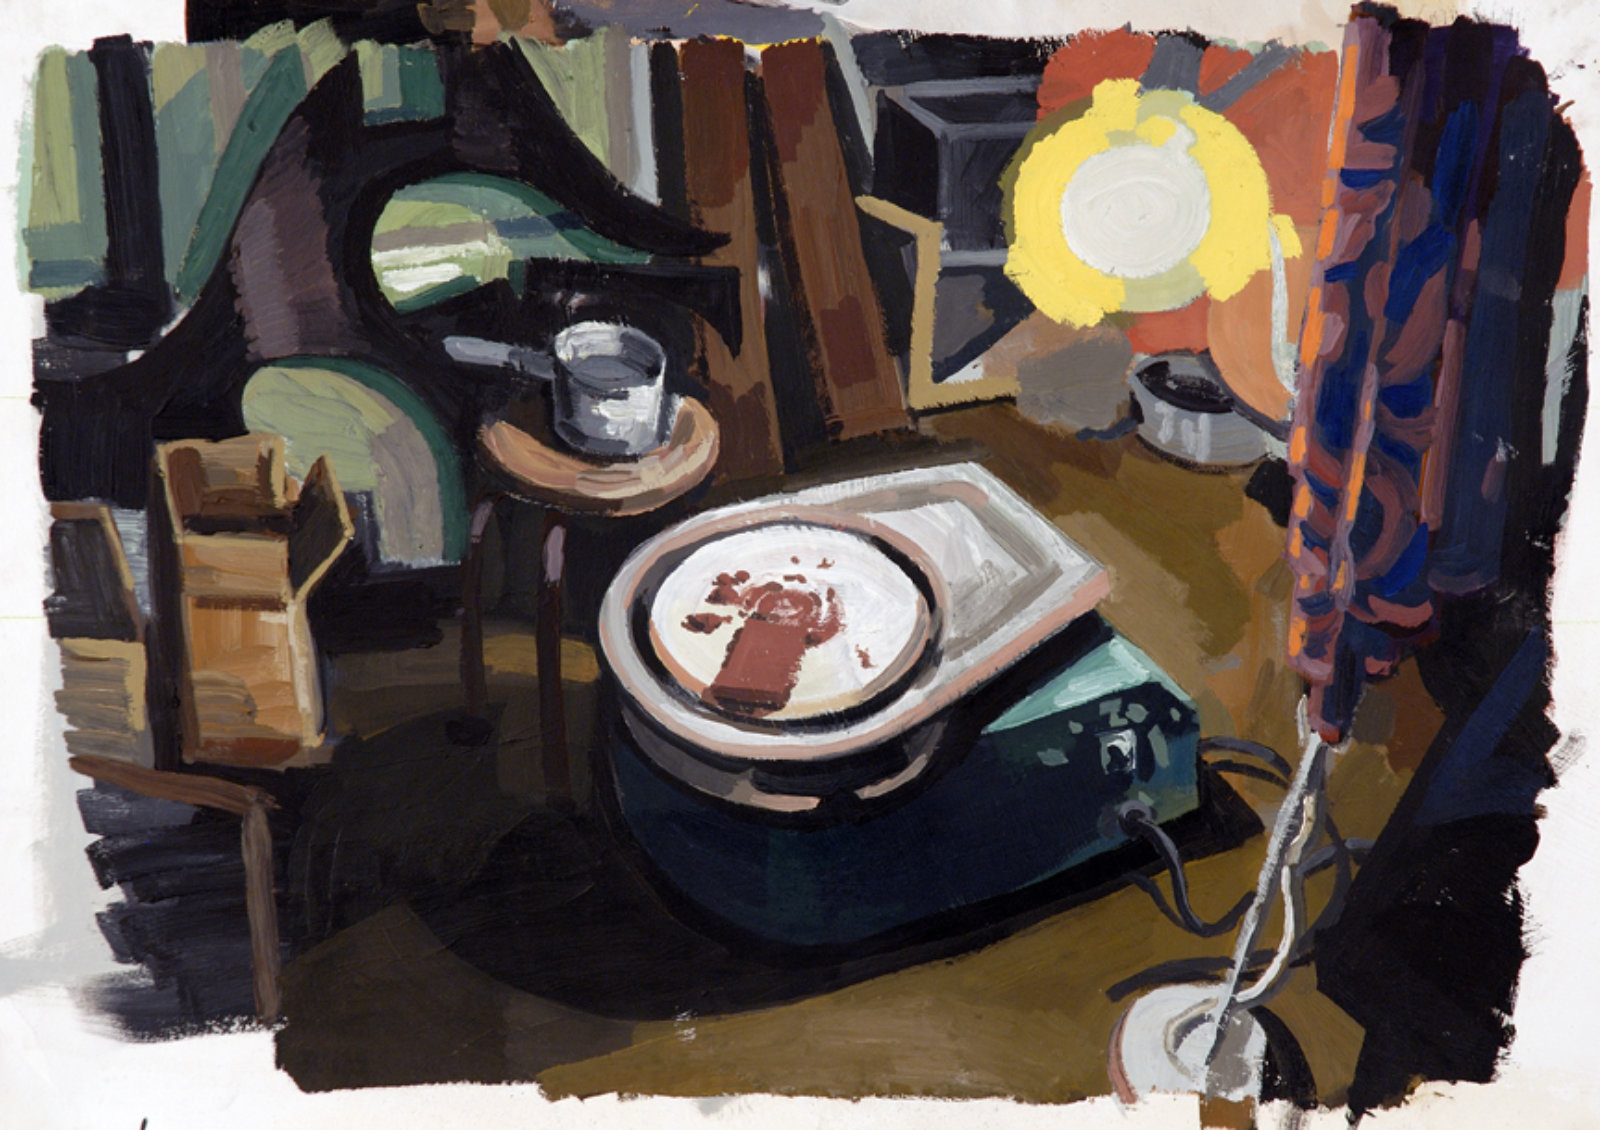 Damian Moppett, Pottery Wheel in Basement, 2006, oil on paper, 26 x 34 in. (66 x 87 cm)